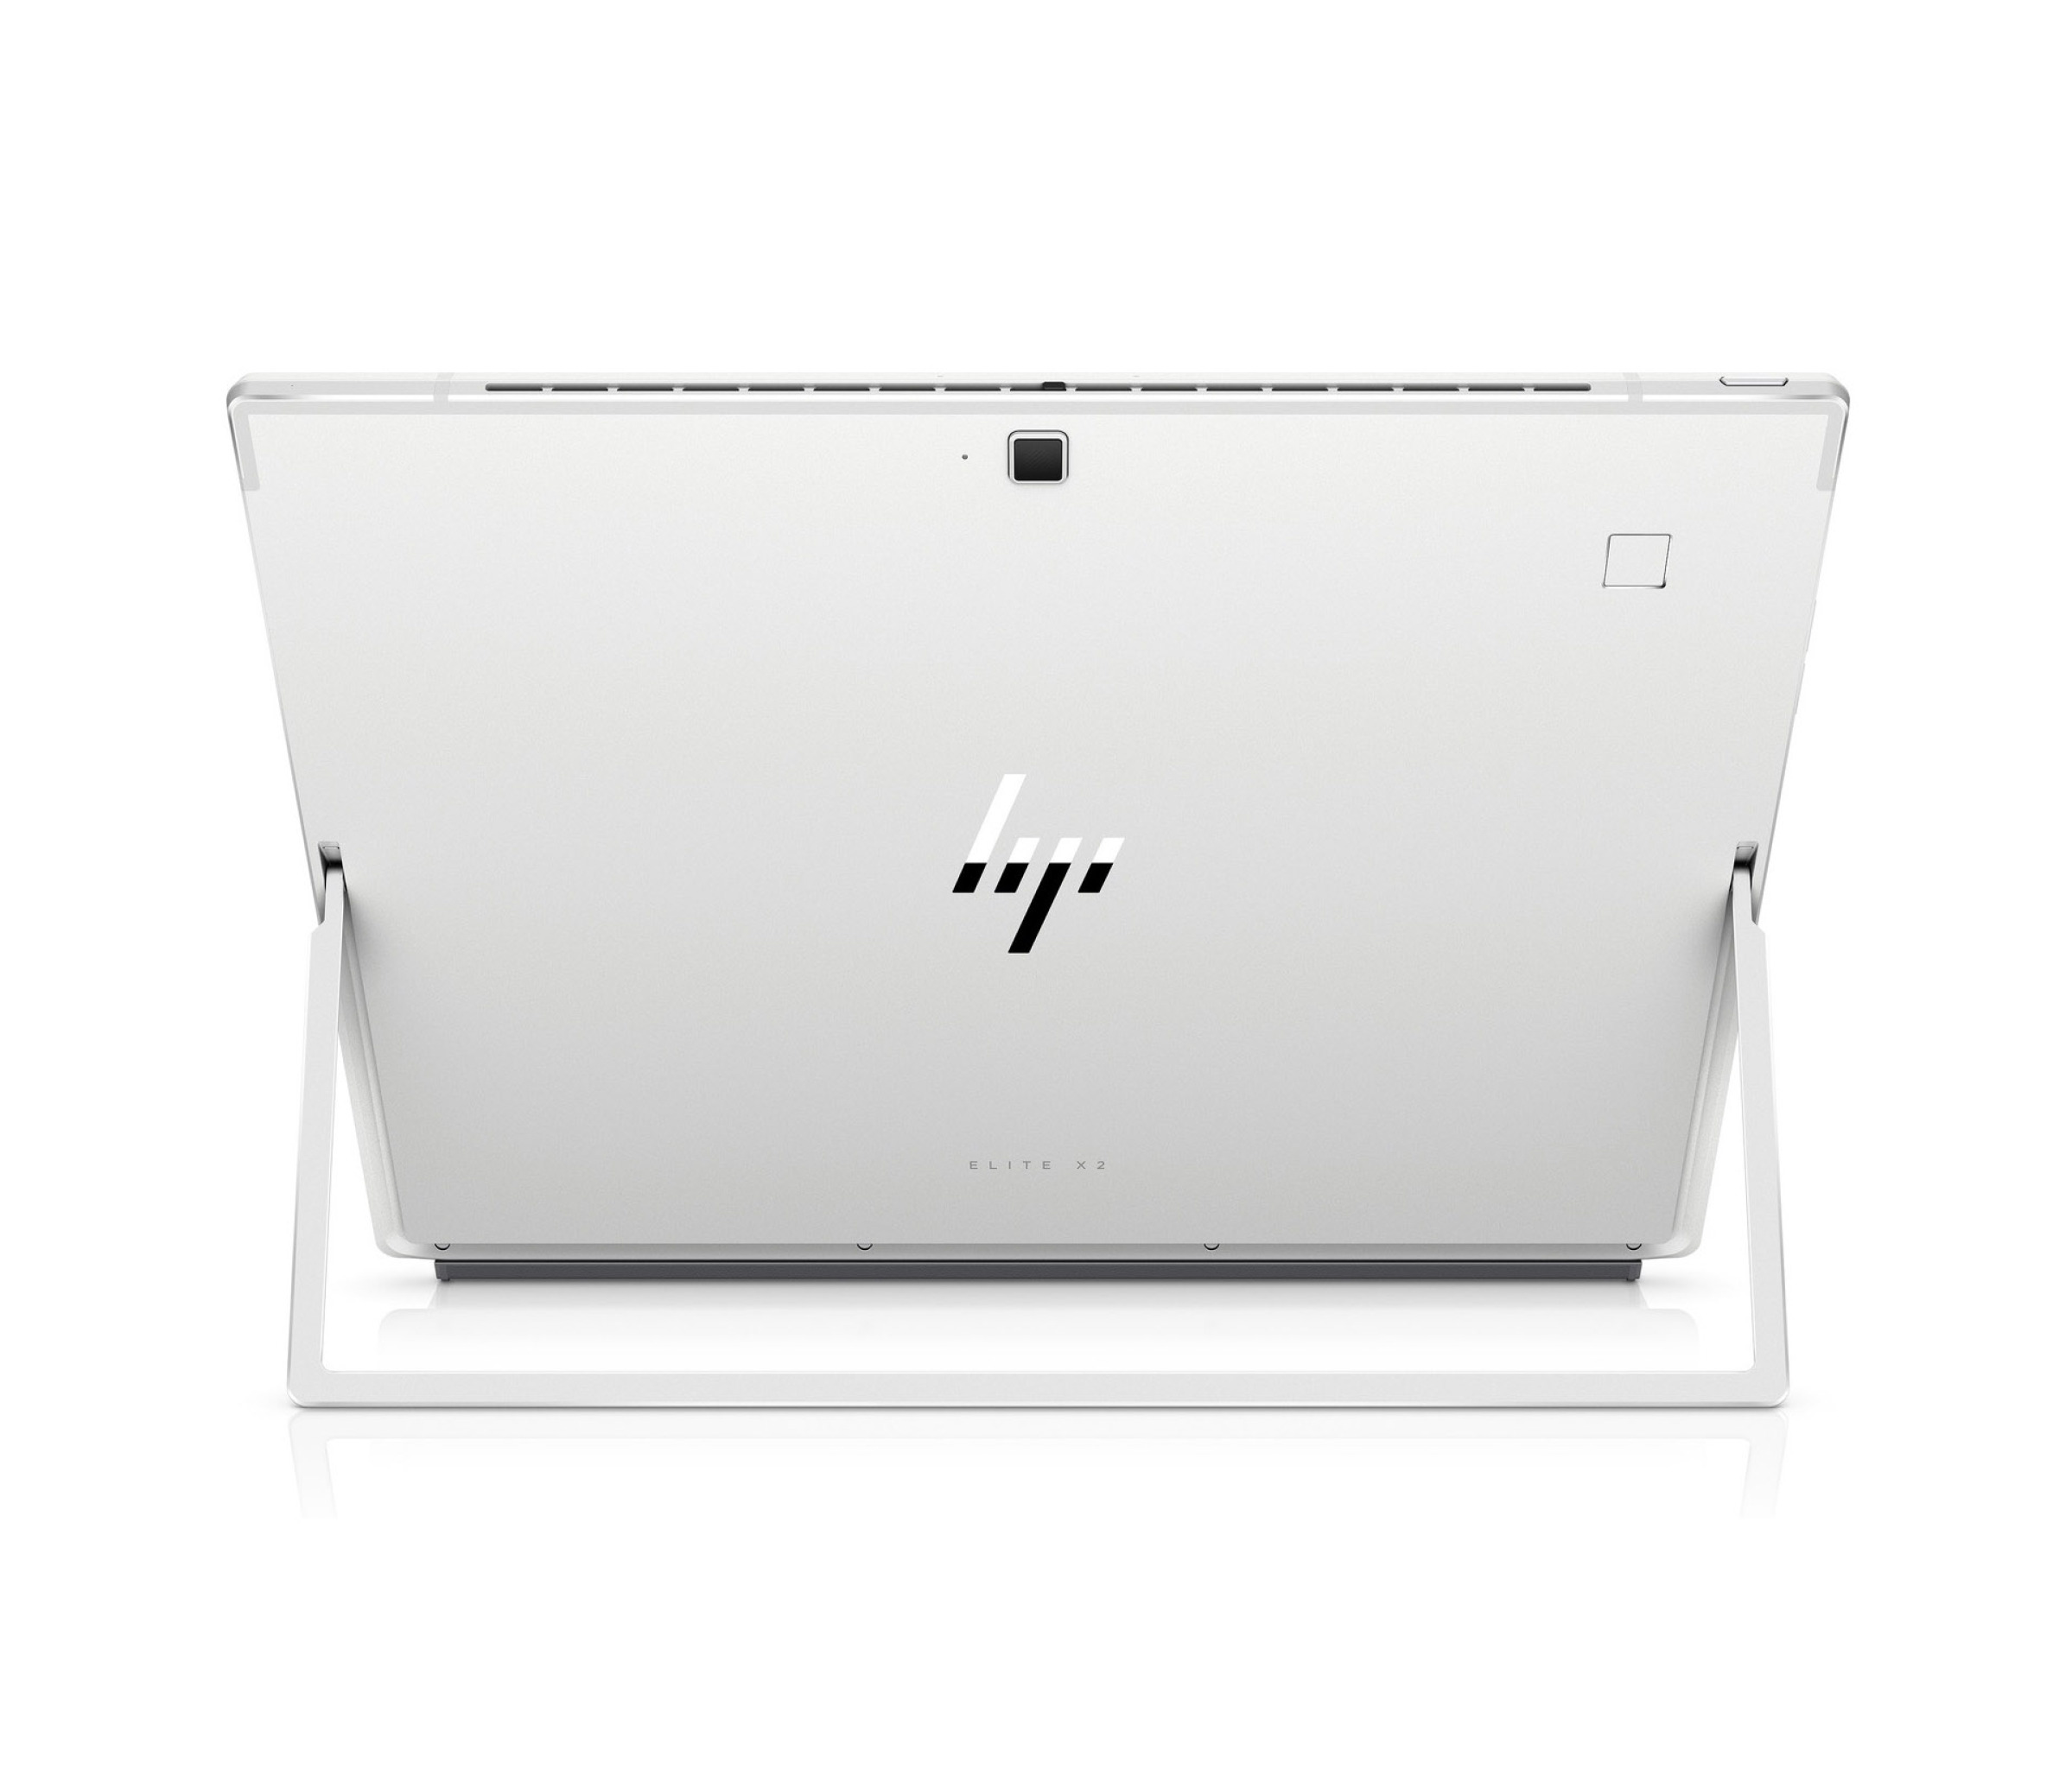  قیمت تبلت ویندوزی HP Elite X2 G4 با قلم | لاکچری لپ تاپ 